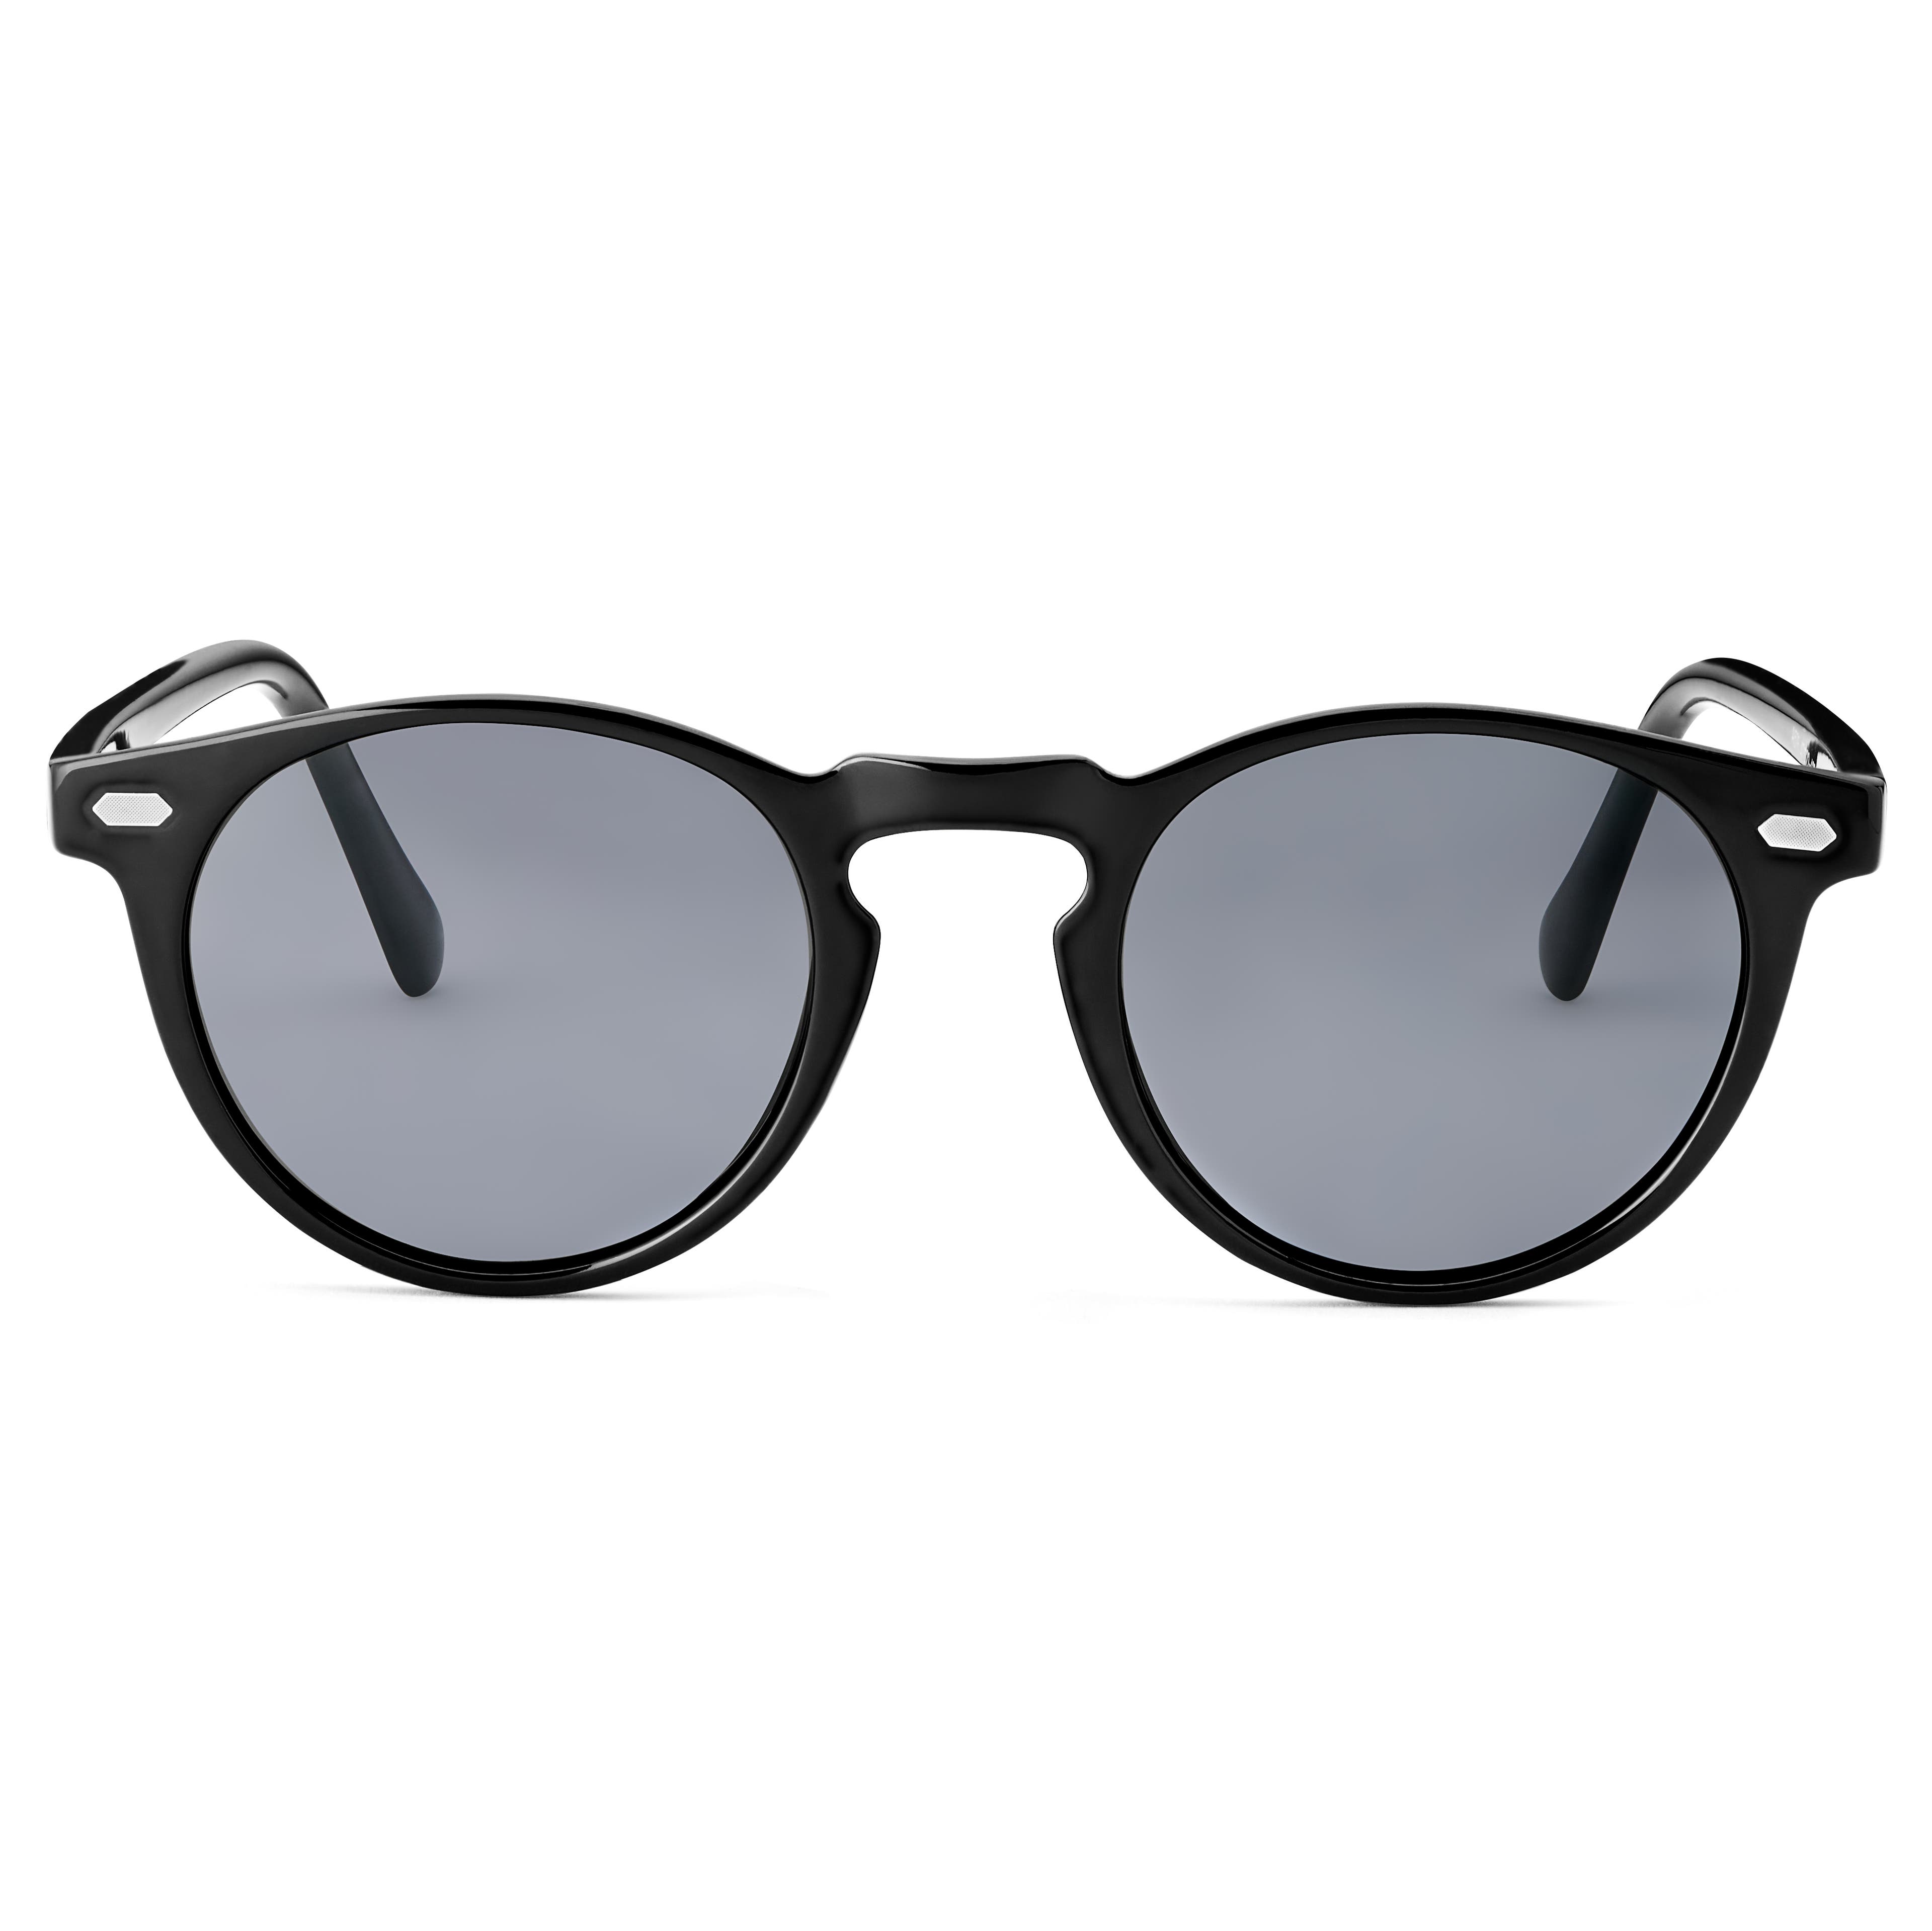 Sorte Retro Polariserede Solbriller | På lager! | Sidegren